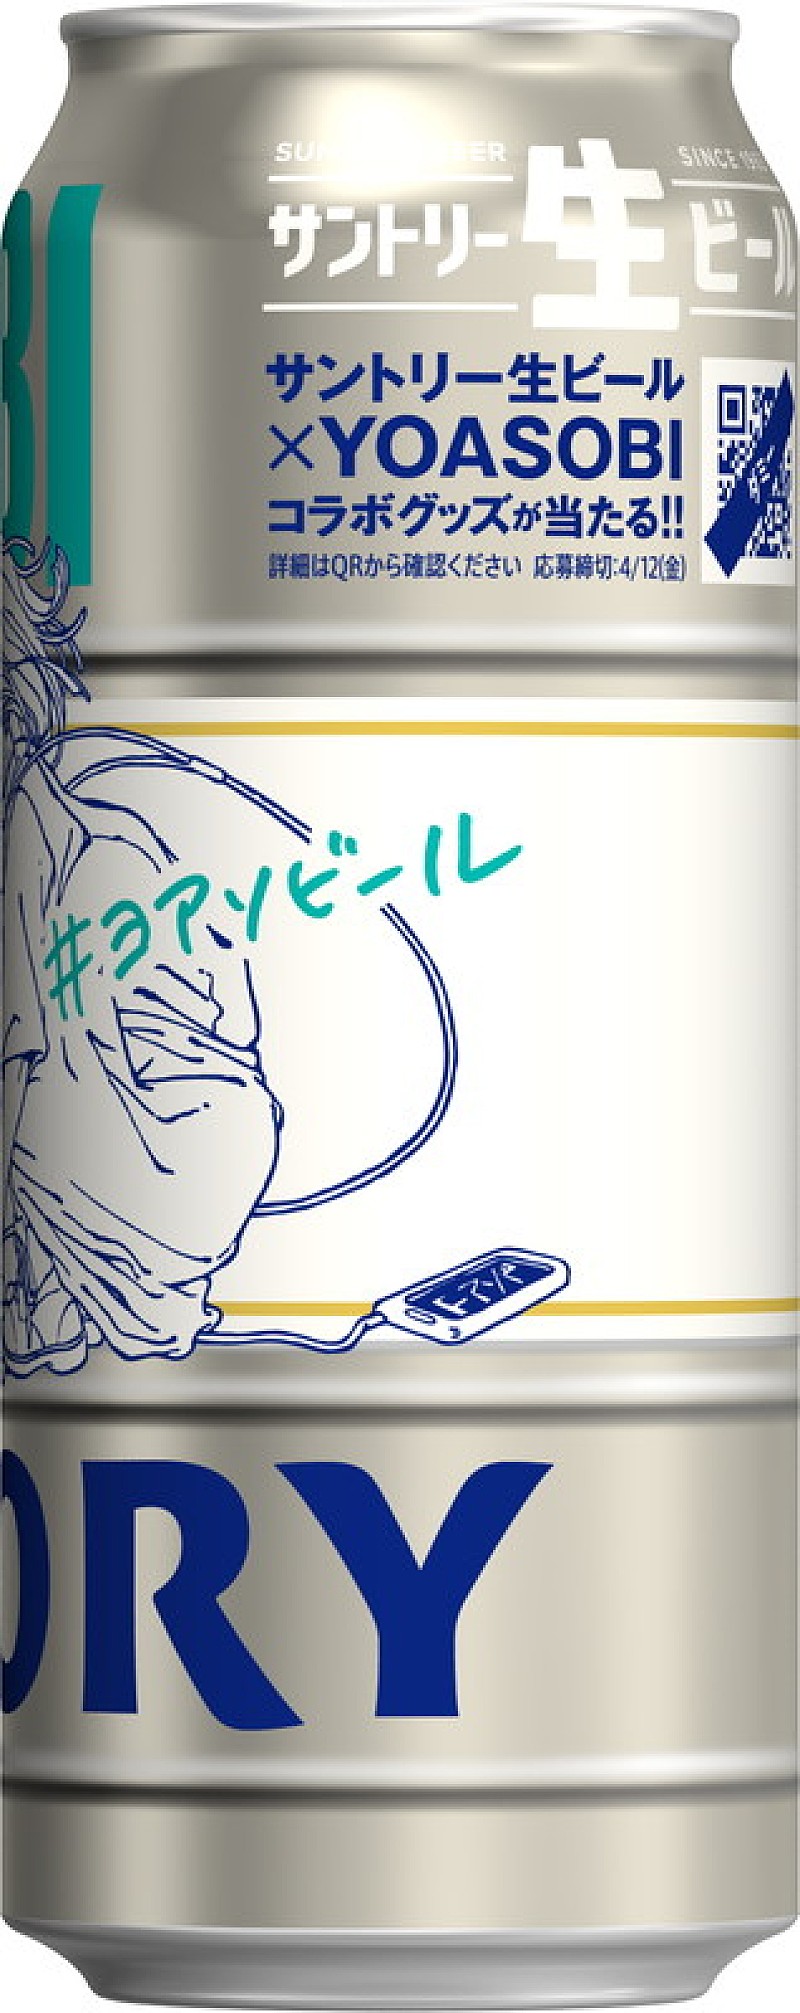 サントリー生ビール YOASOBIコラボデザイン缶』全国のコンビニで販売